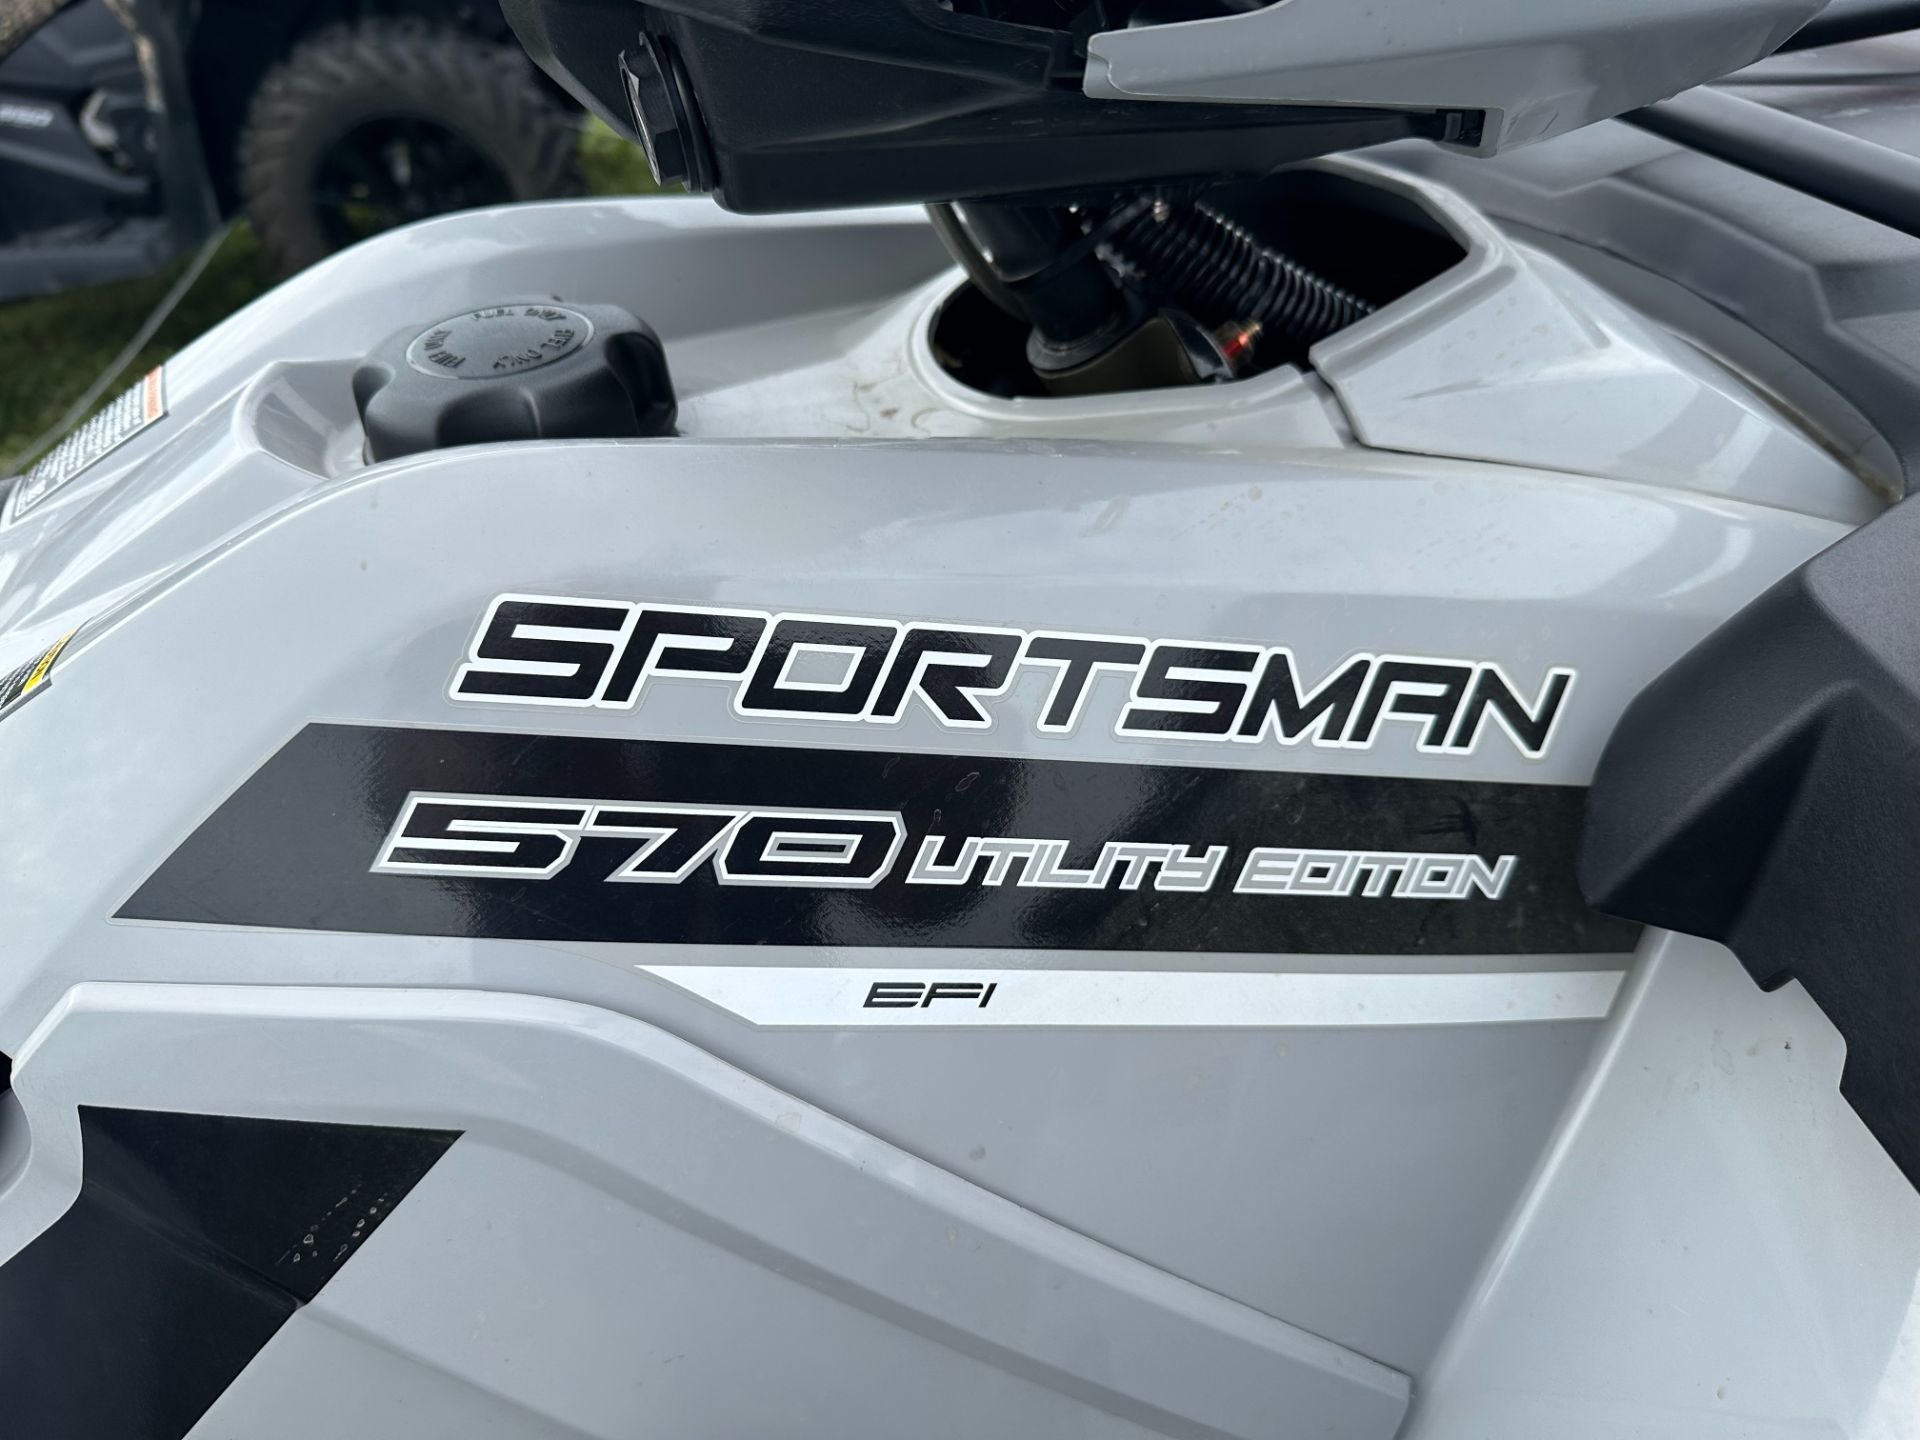 2019 Polaris Sportsman 570 EPS Utility Edition in Antigo, Wisconsin - Photo 3